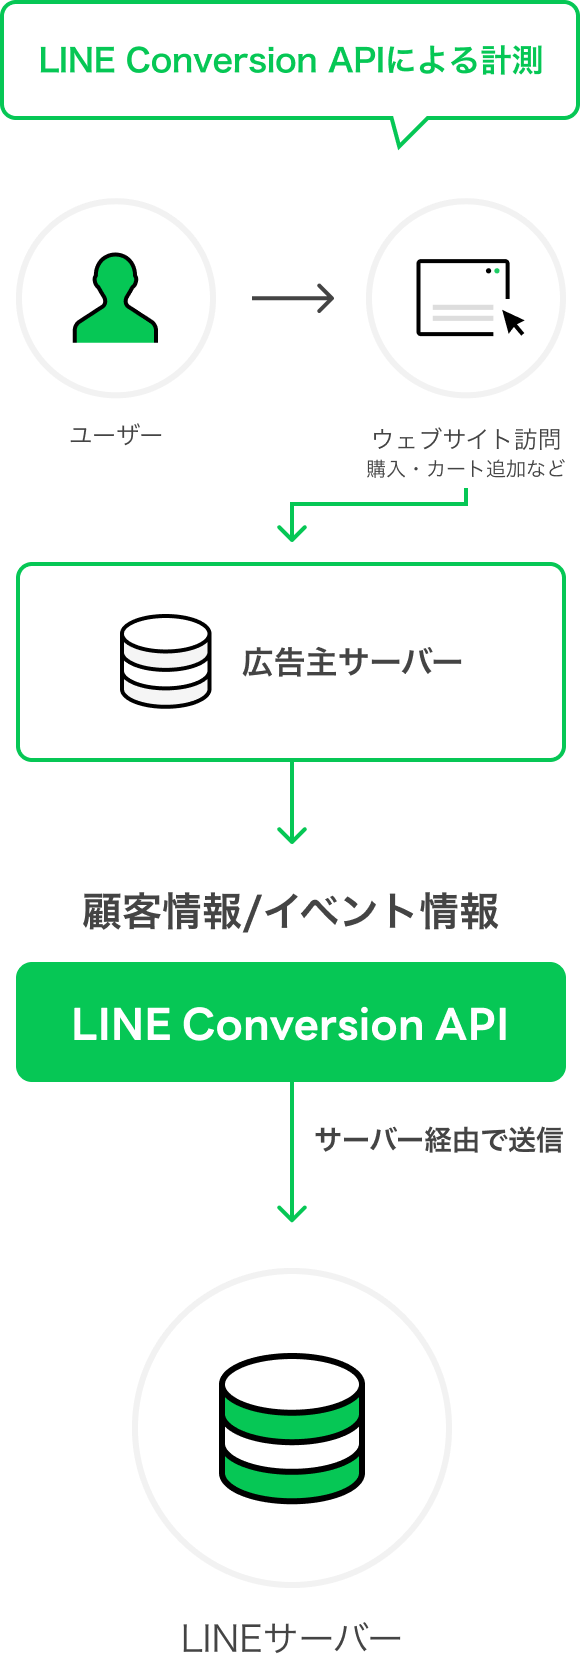 広告主側で取得したデータを、LINEへ直接接続し、サーバー経由での計測を実現。02